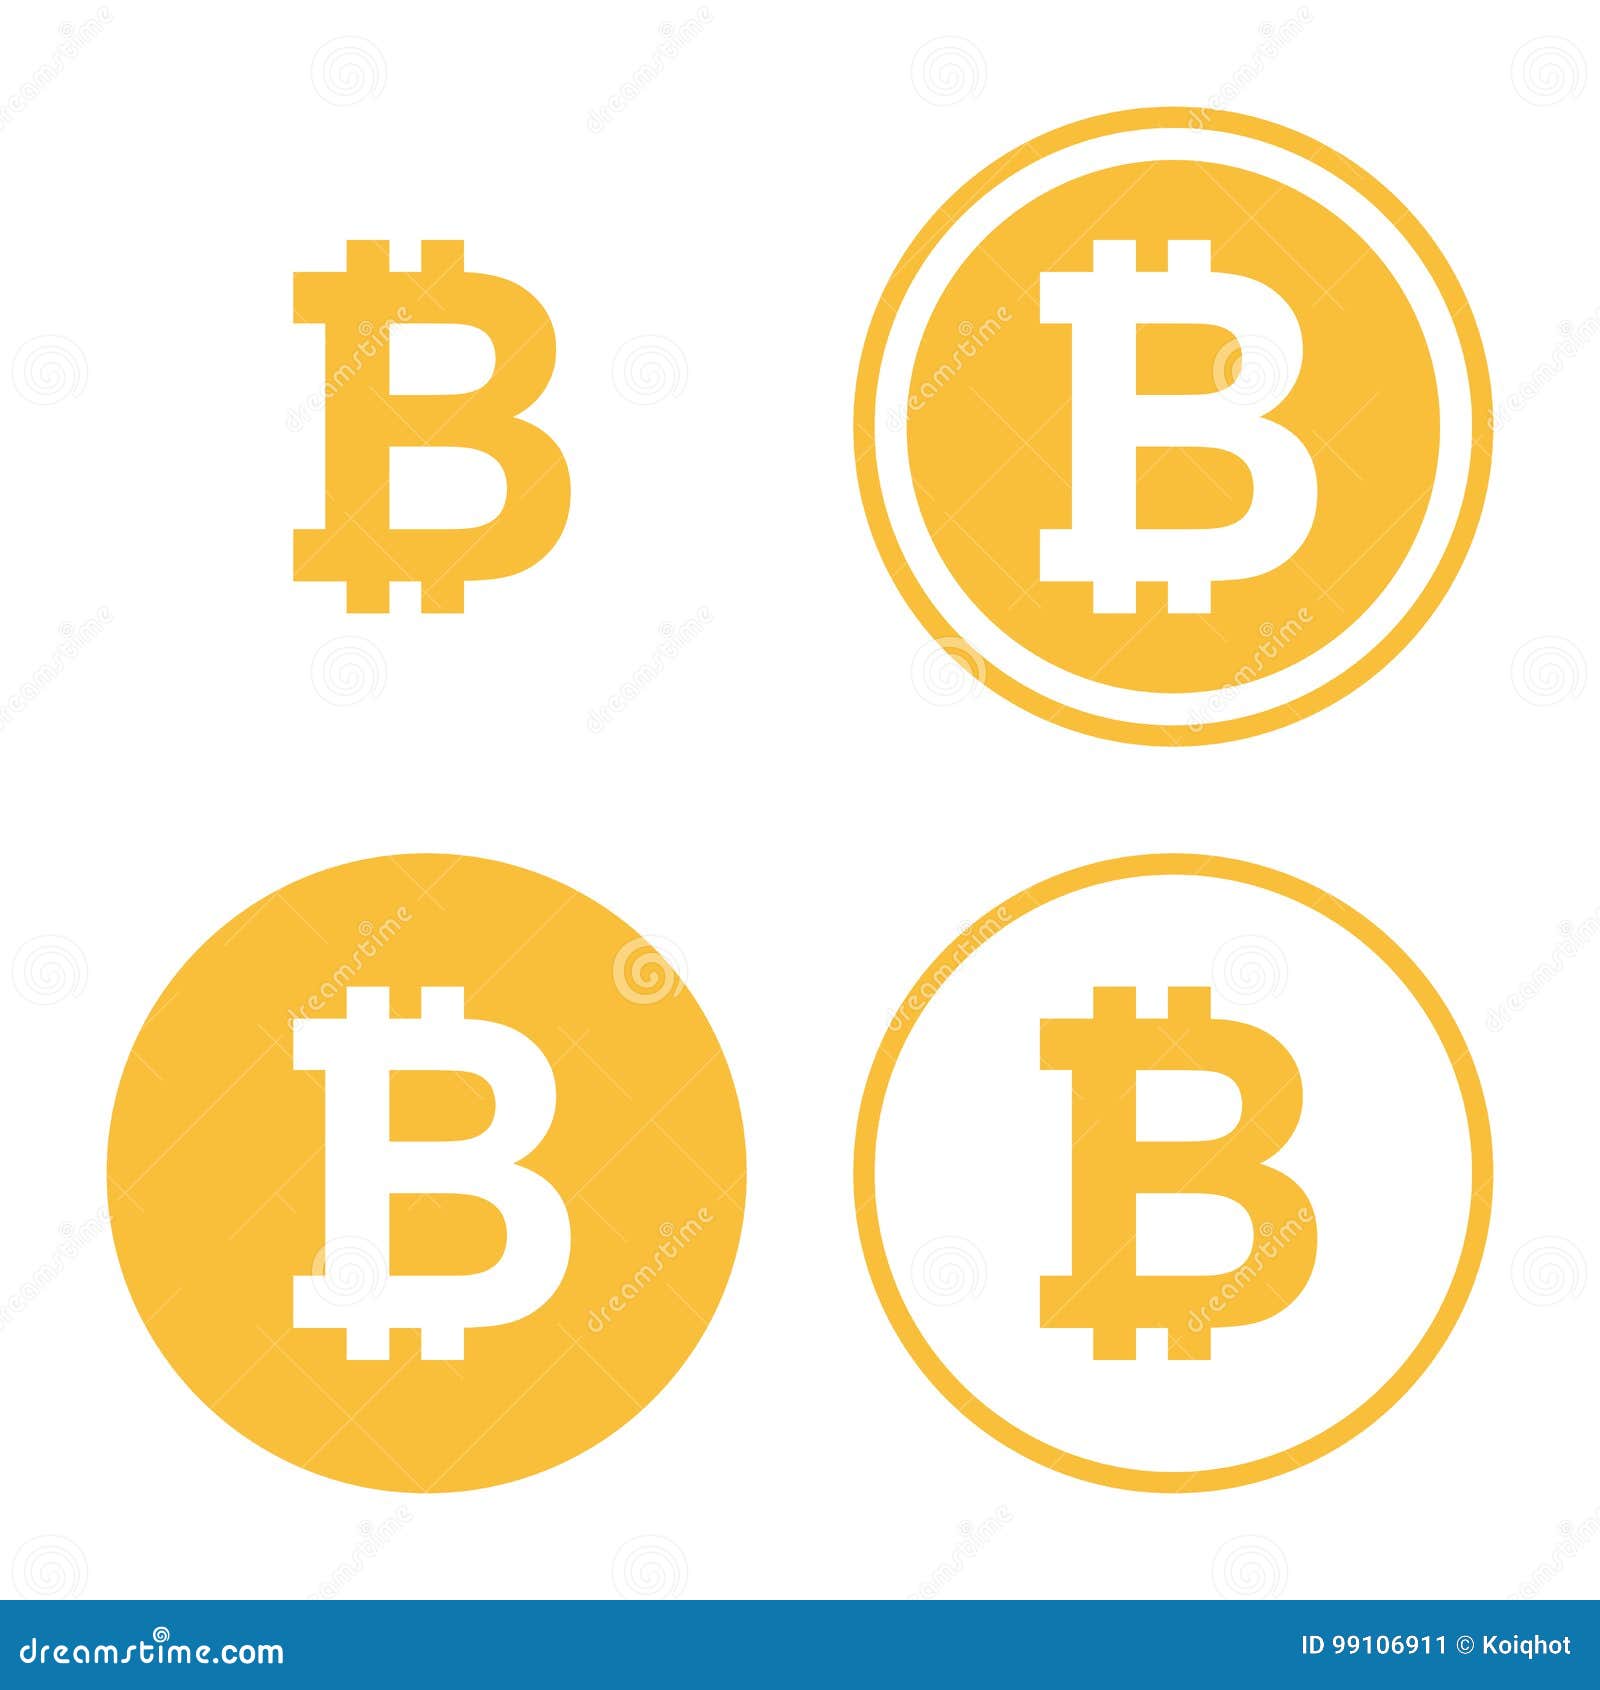 bitcoin icon set